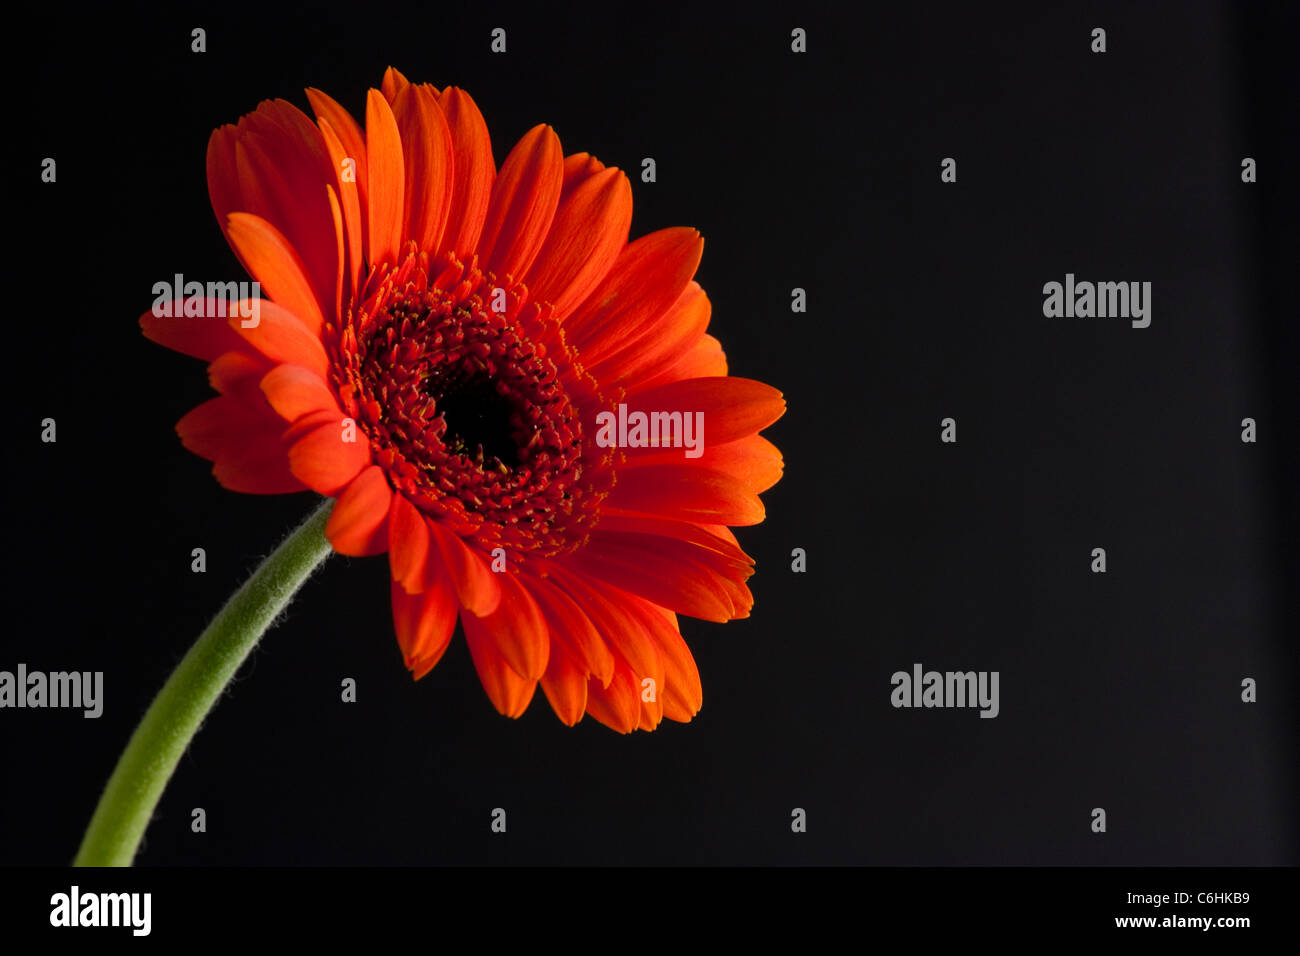 orange daisy or echinacea on black background Stock Photo